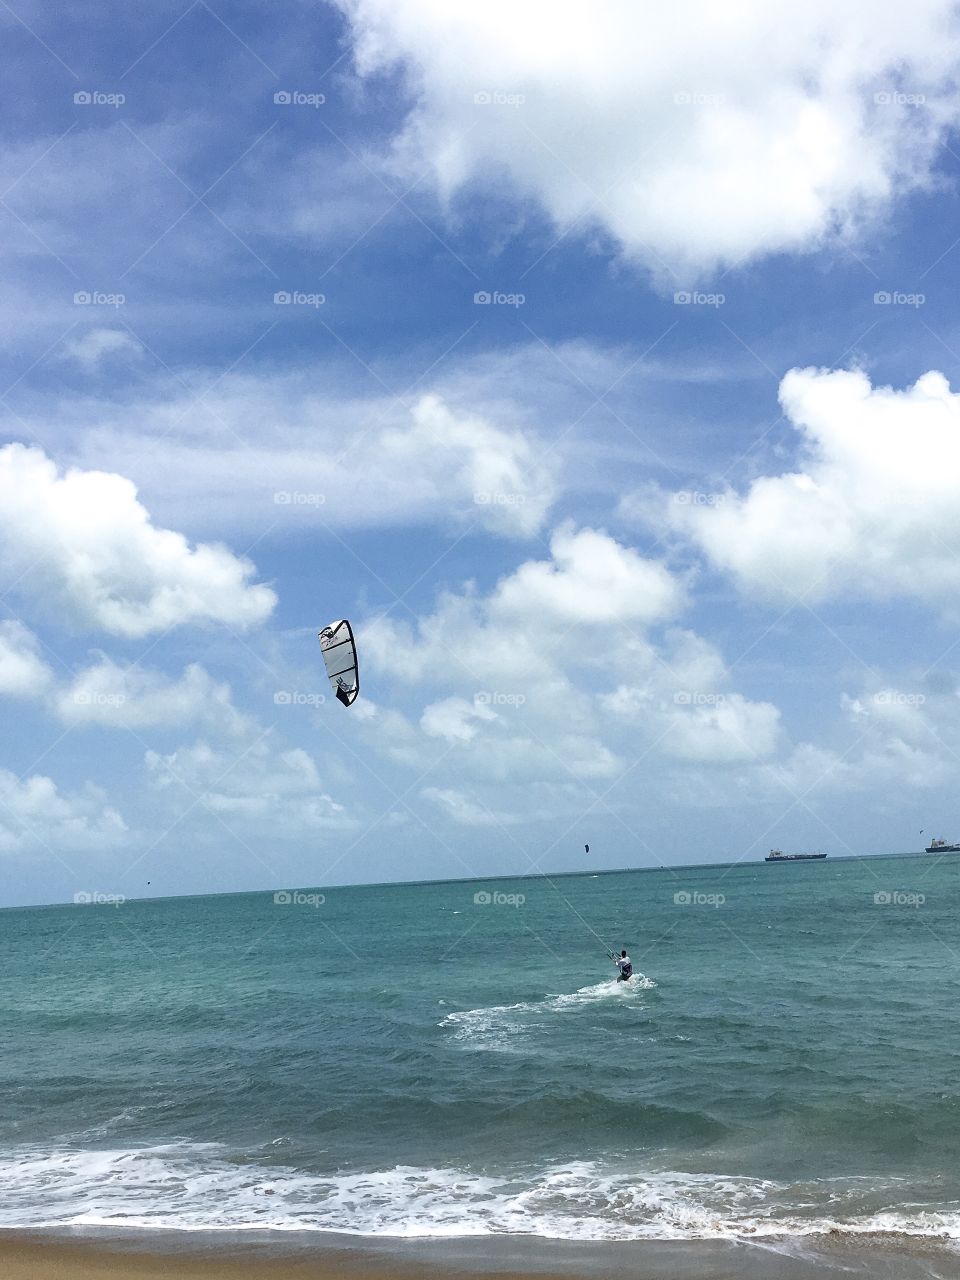 My boyfriend on his third kite surfing downwind!